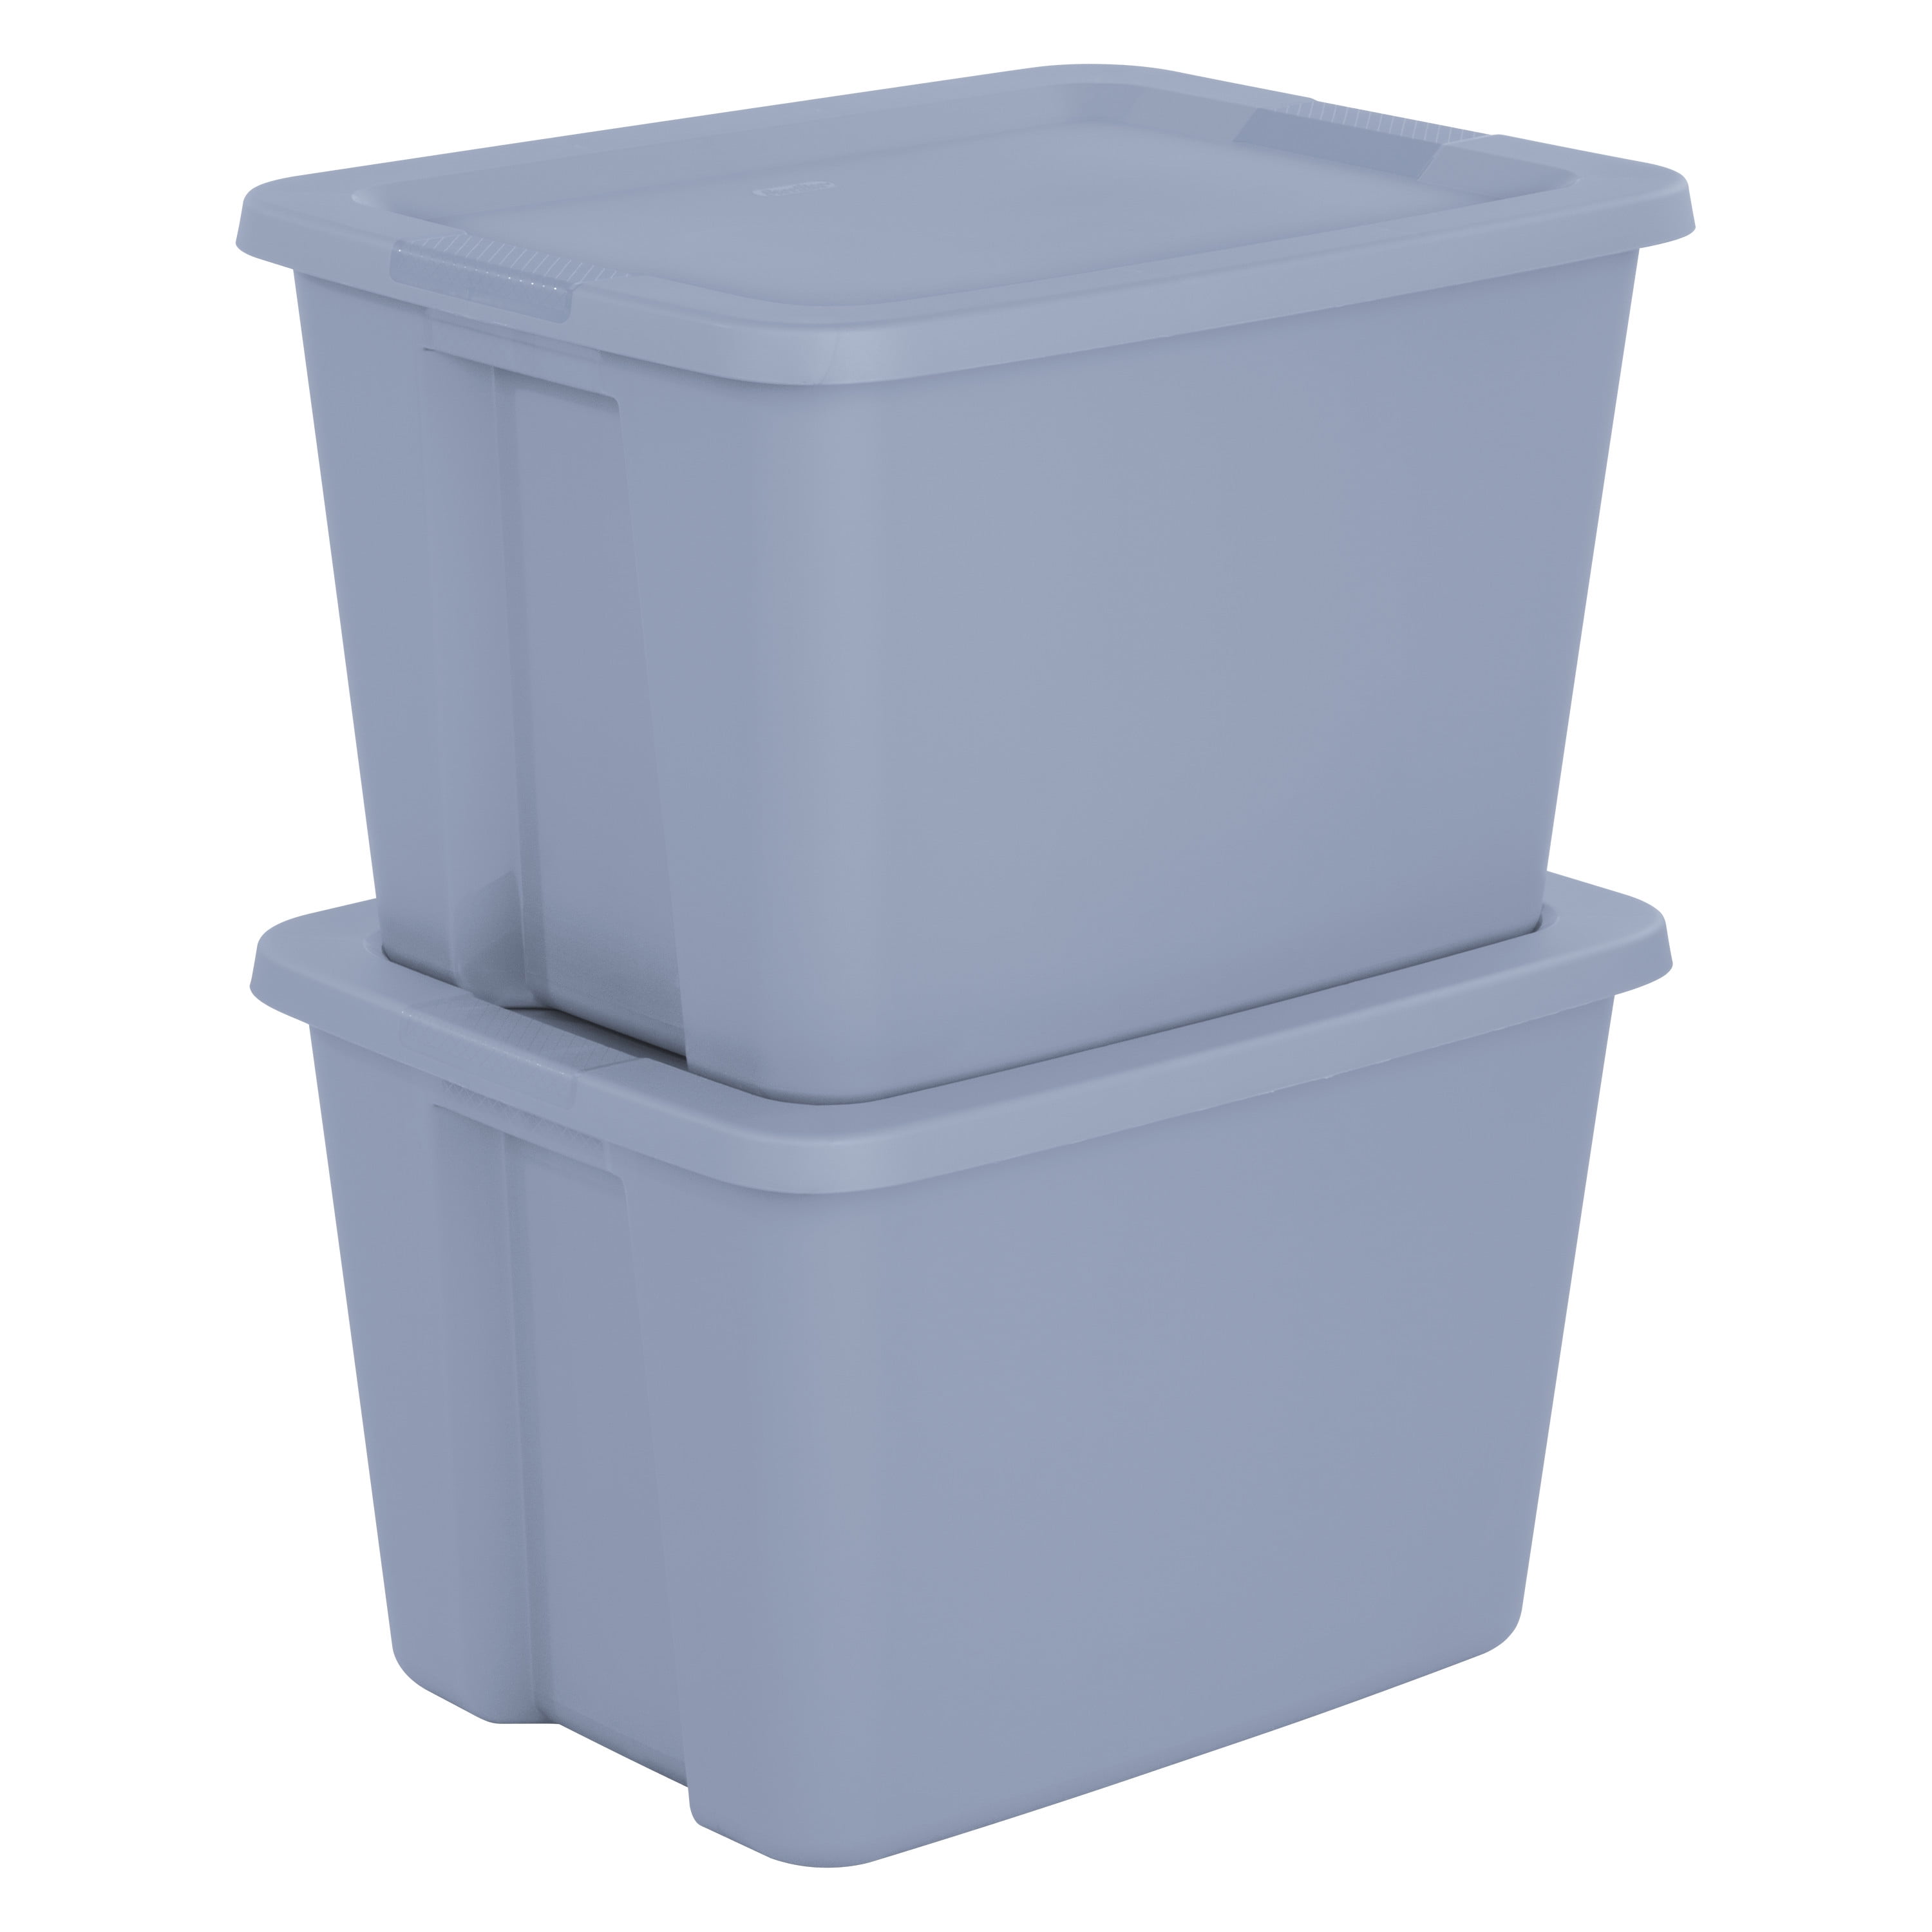 Sterilite 18 Gallon Tote Box Plastic, Gray 